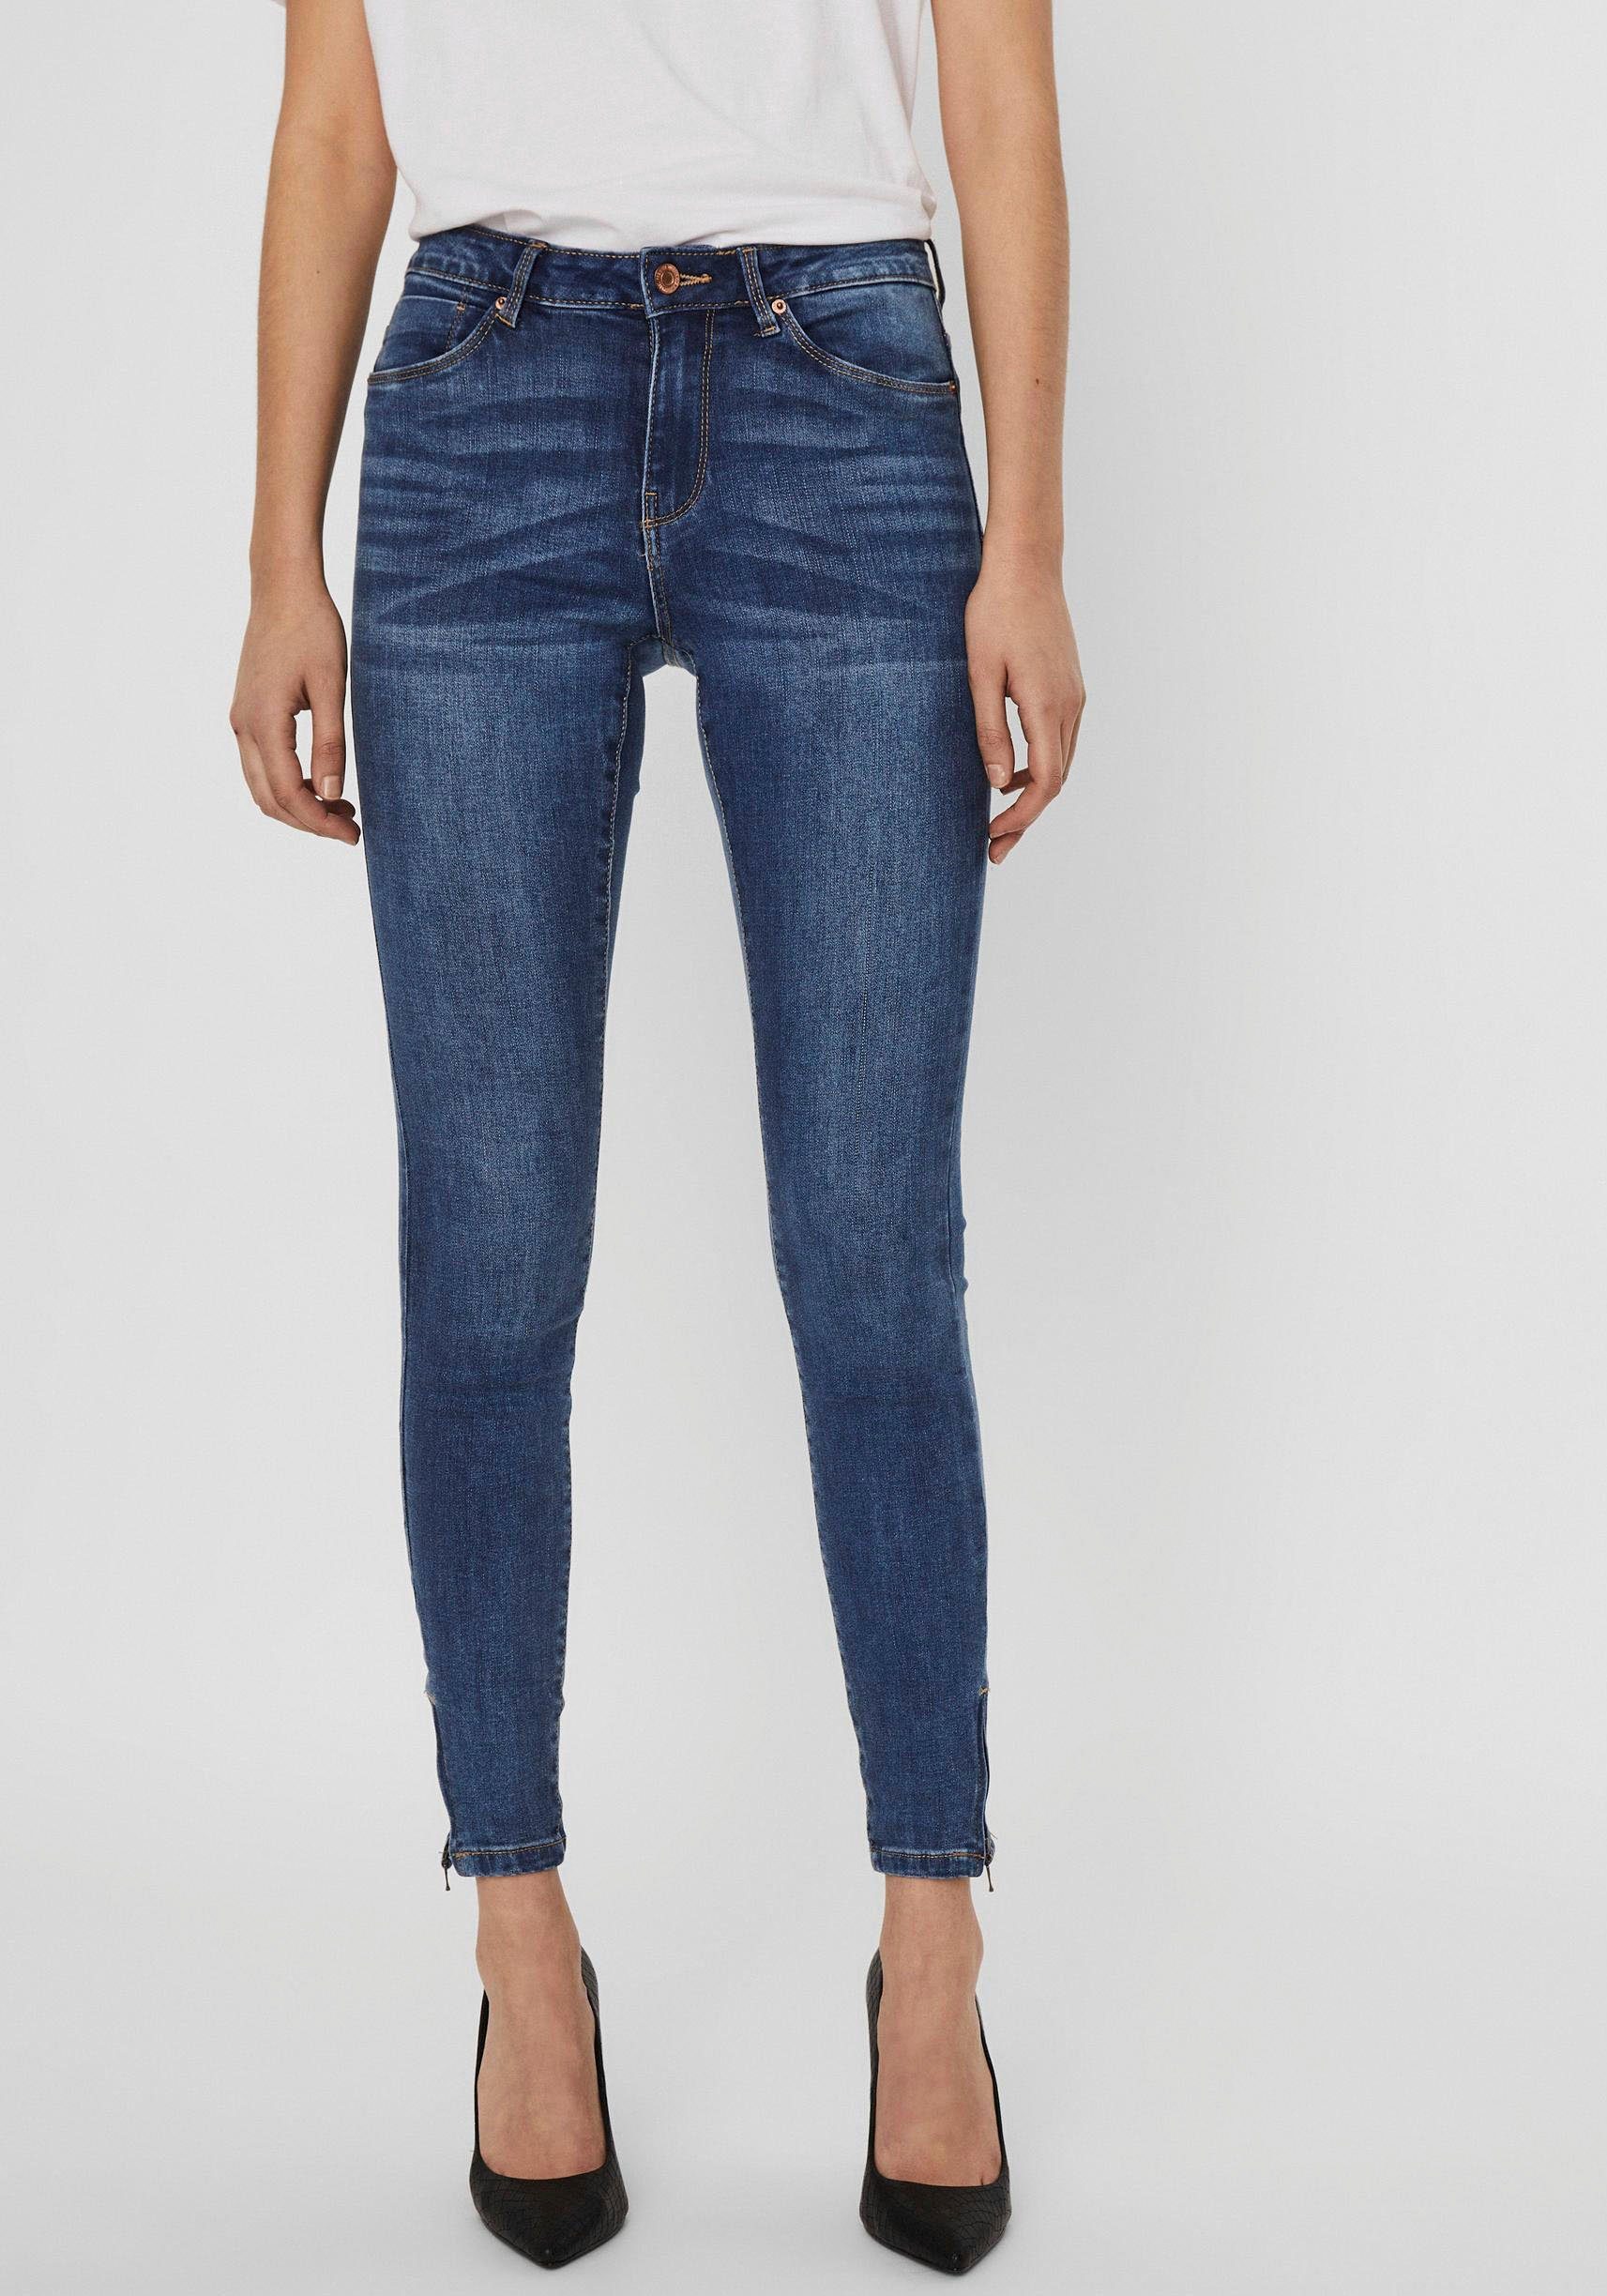 Vero Moda Skinny-fit-Jeans »VMTILDE« mit Zipper am Saum online kaufen | OTTO